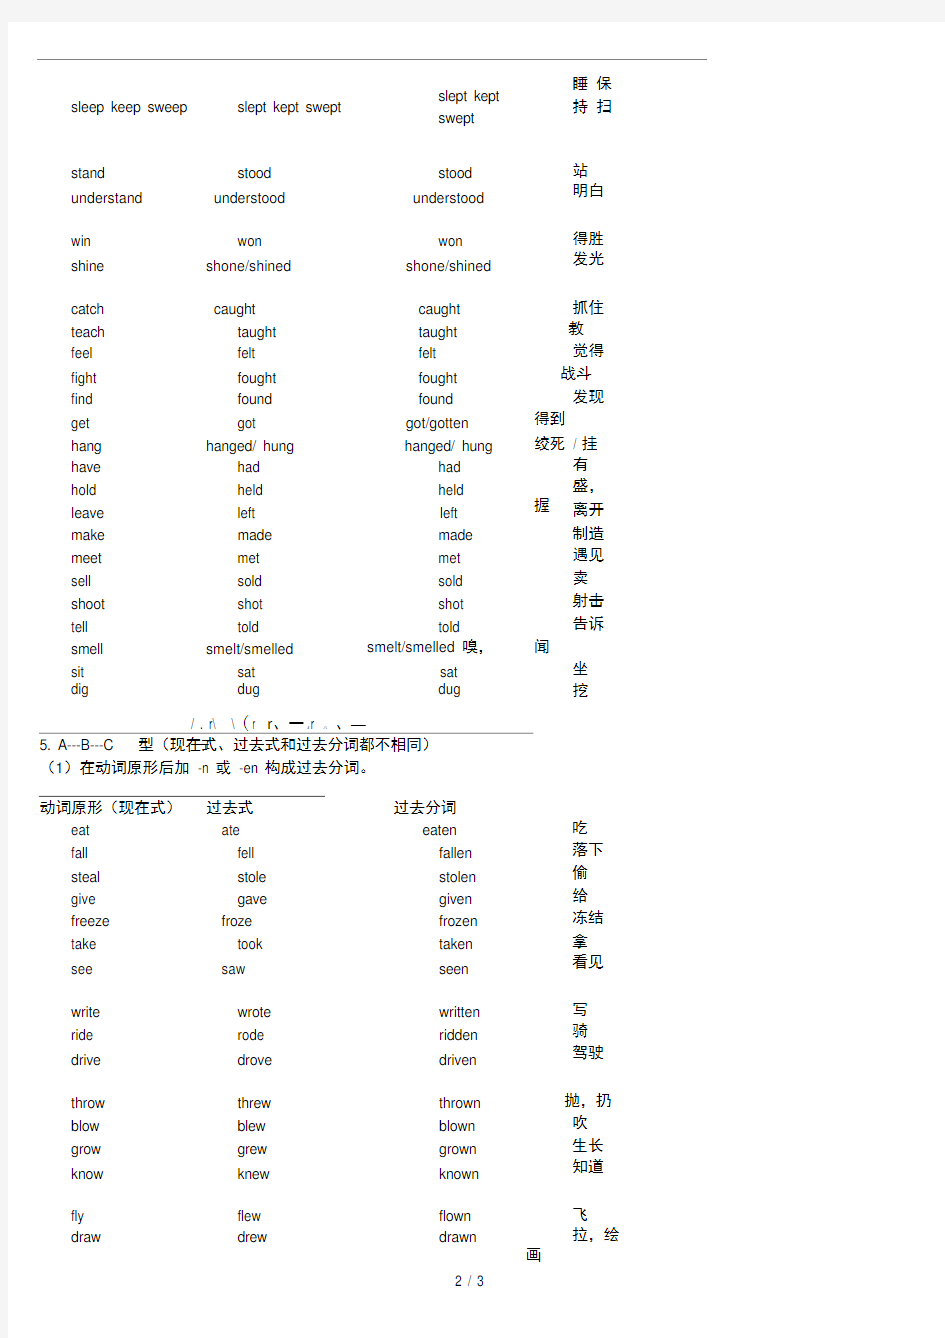 人教版初中英语动词不规则变化表(完整版)